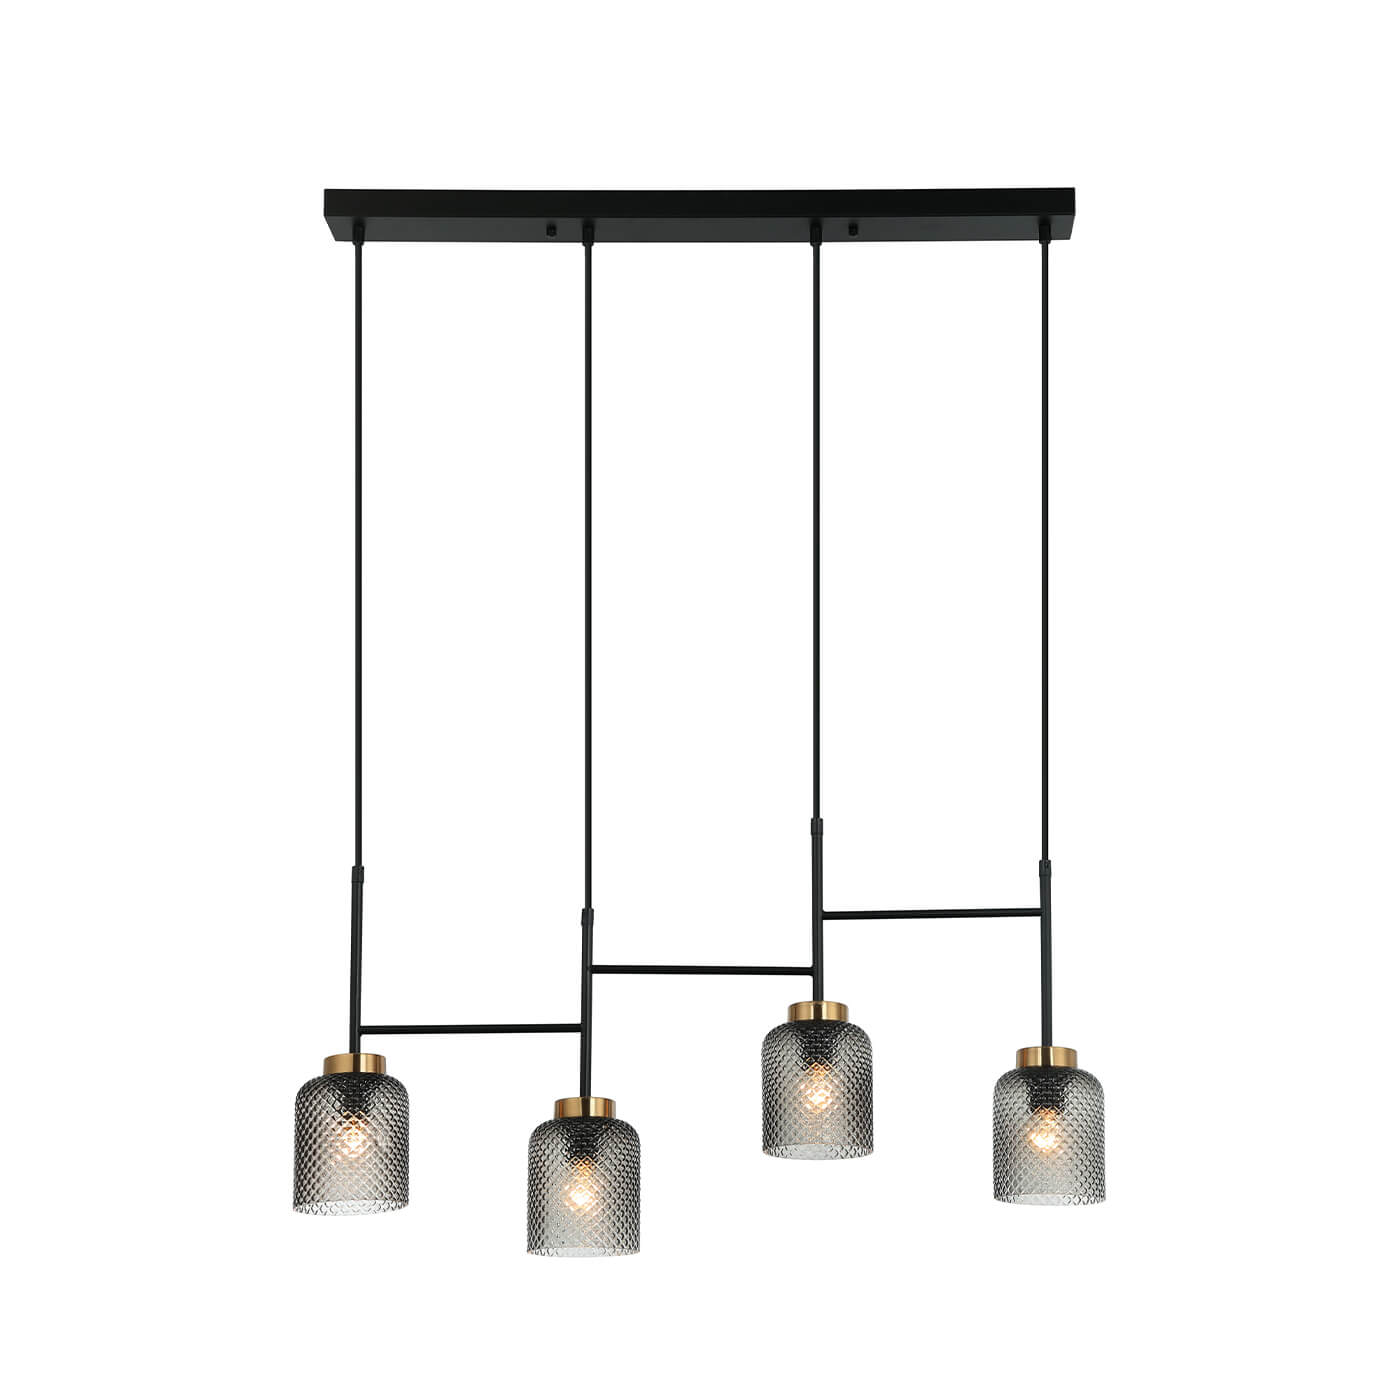 Cauti o lampa suspendata neagra ZAC S4L cu abajururi de sticla pentru living, design minimalist, elegant, pentru living, dining sau dormitor din colectia de lustre si candelabre Domicilio?